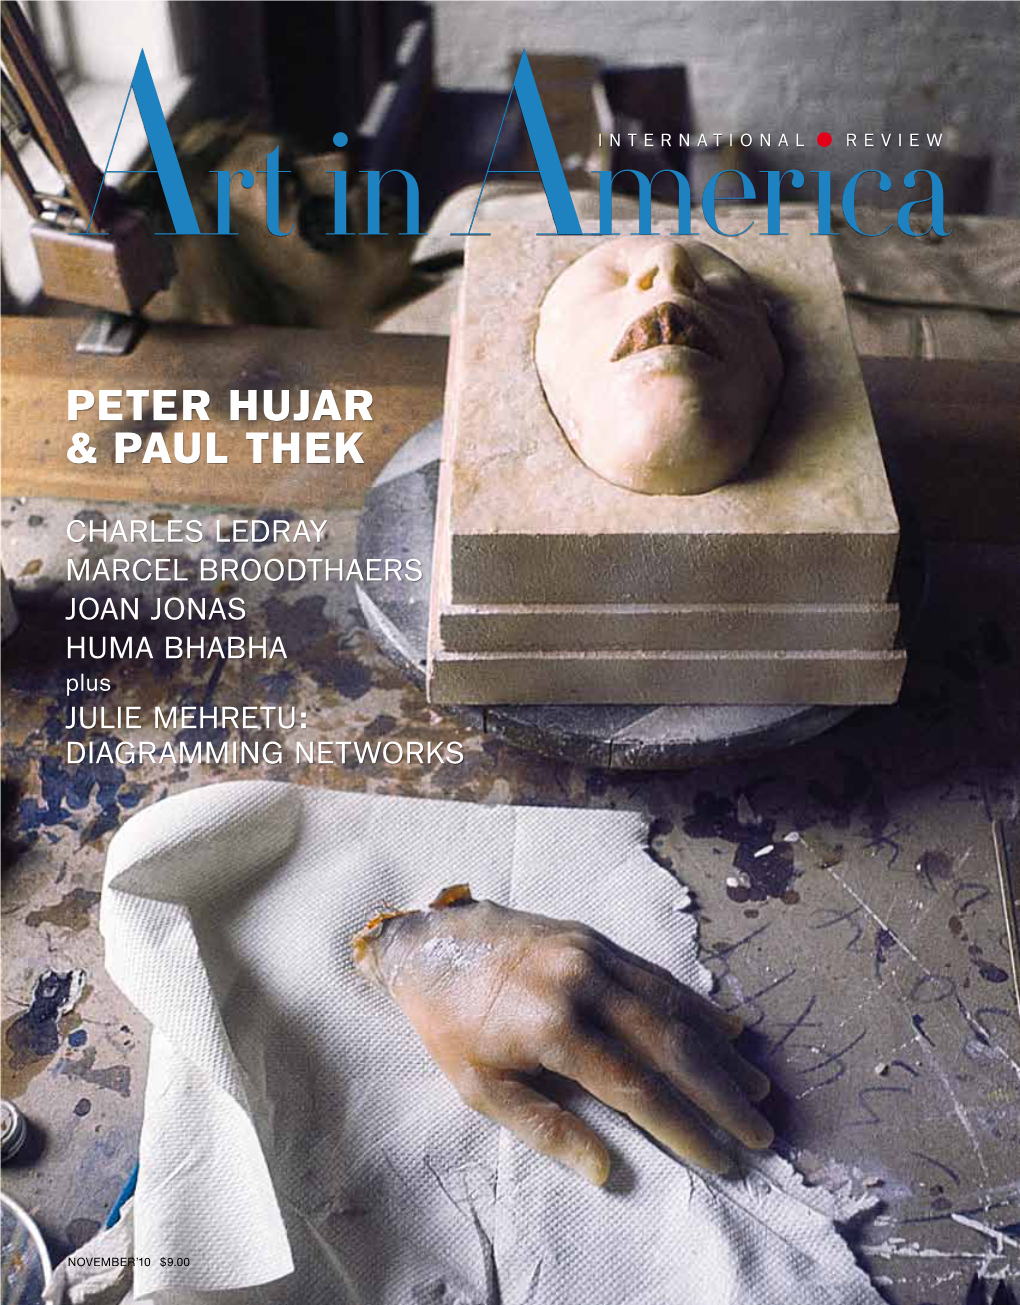 Peter Hujar & Paul Thek